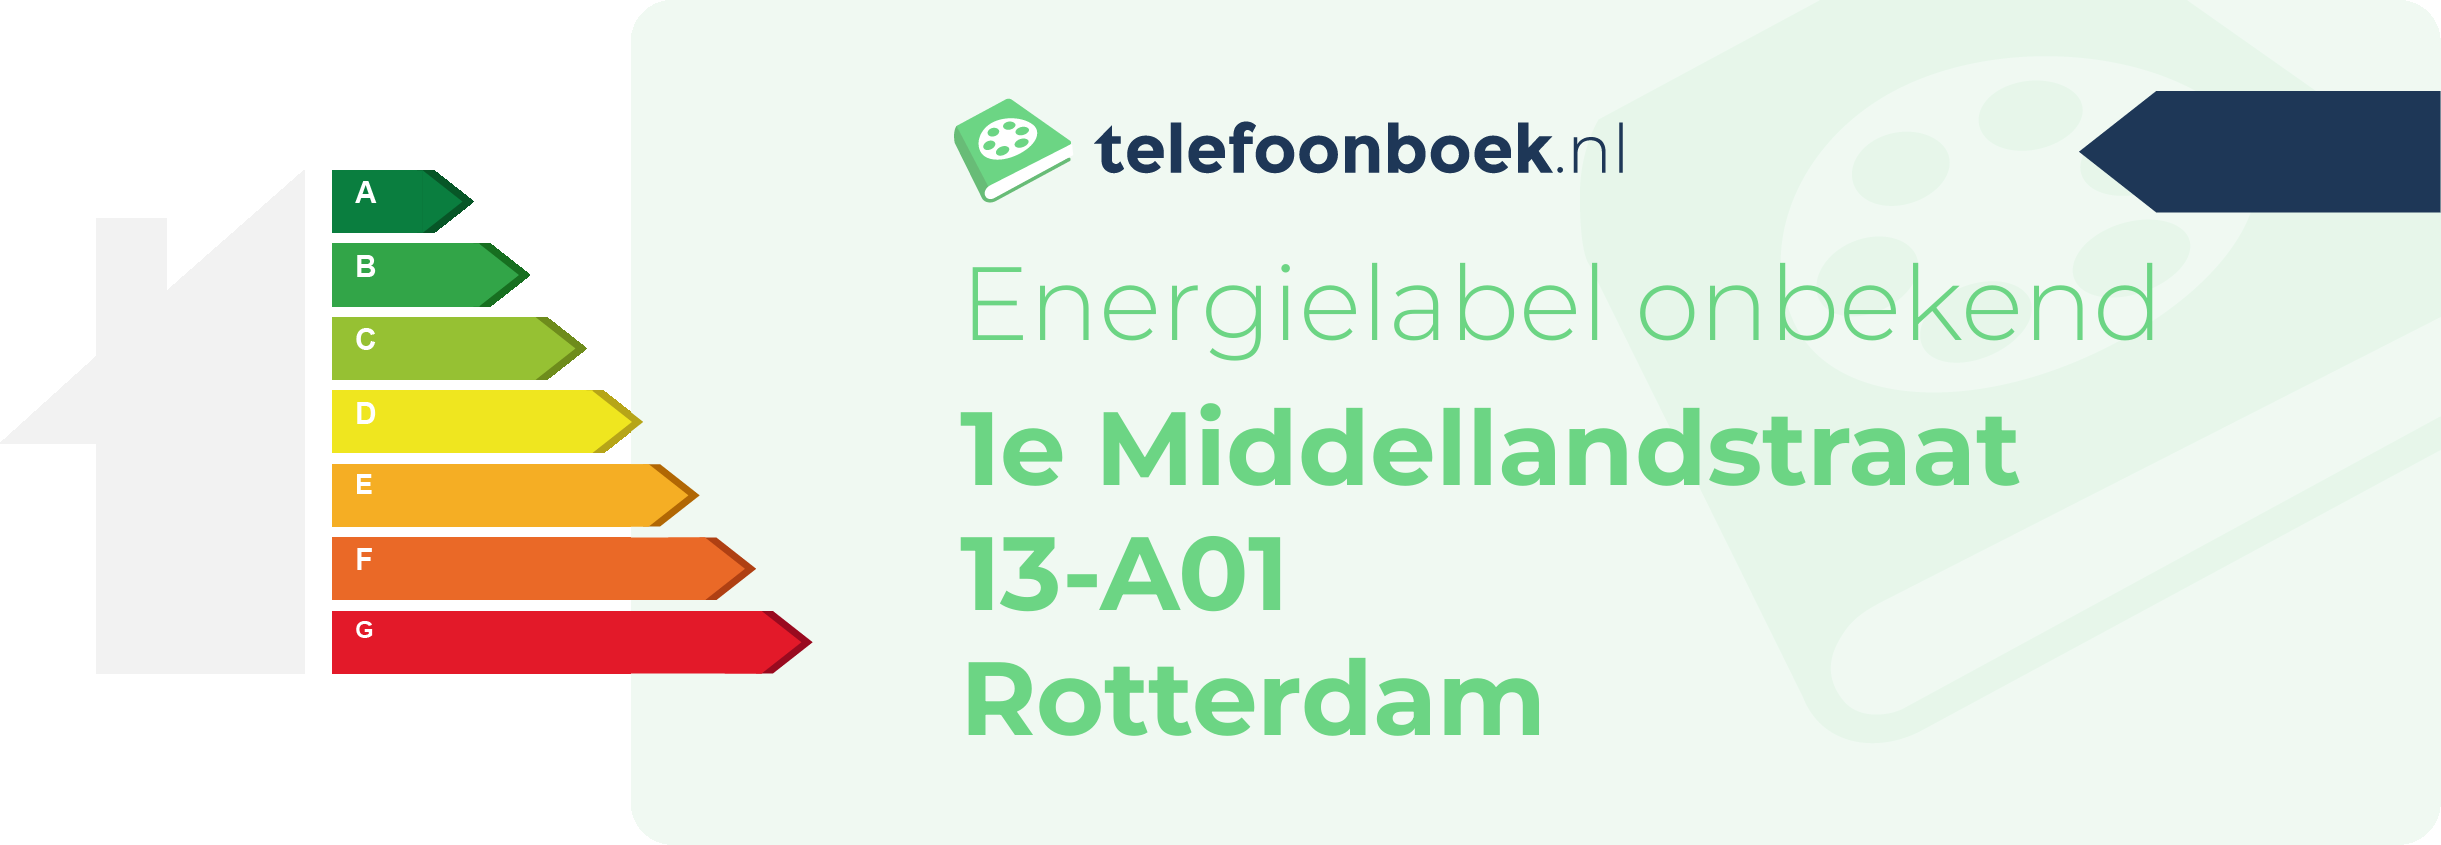 Energielabel 1e Middellandstraat 13-A01 Rotterdam